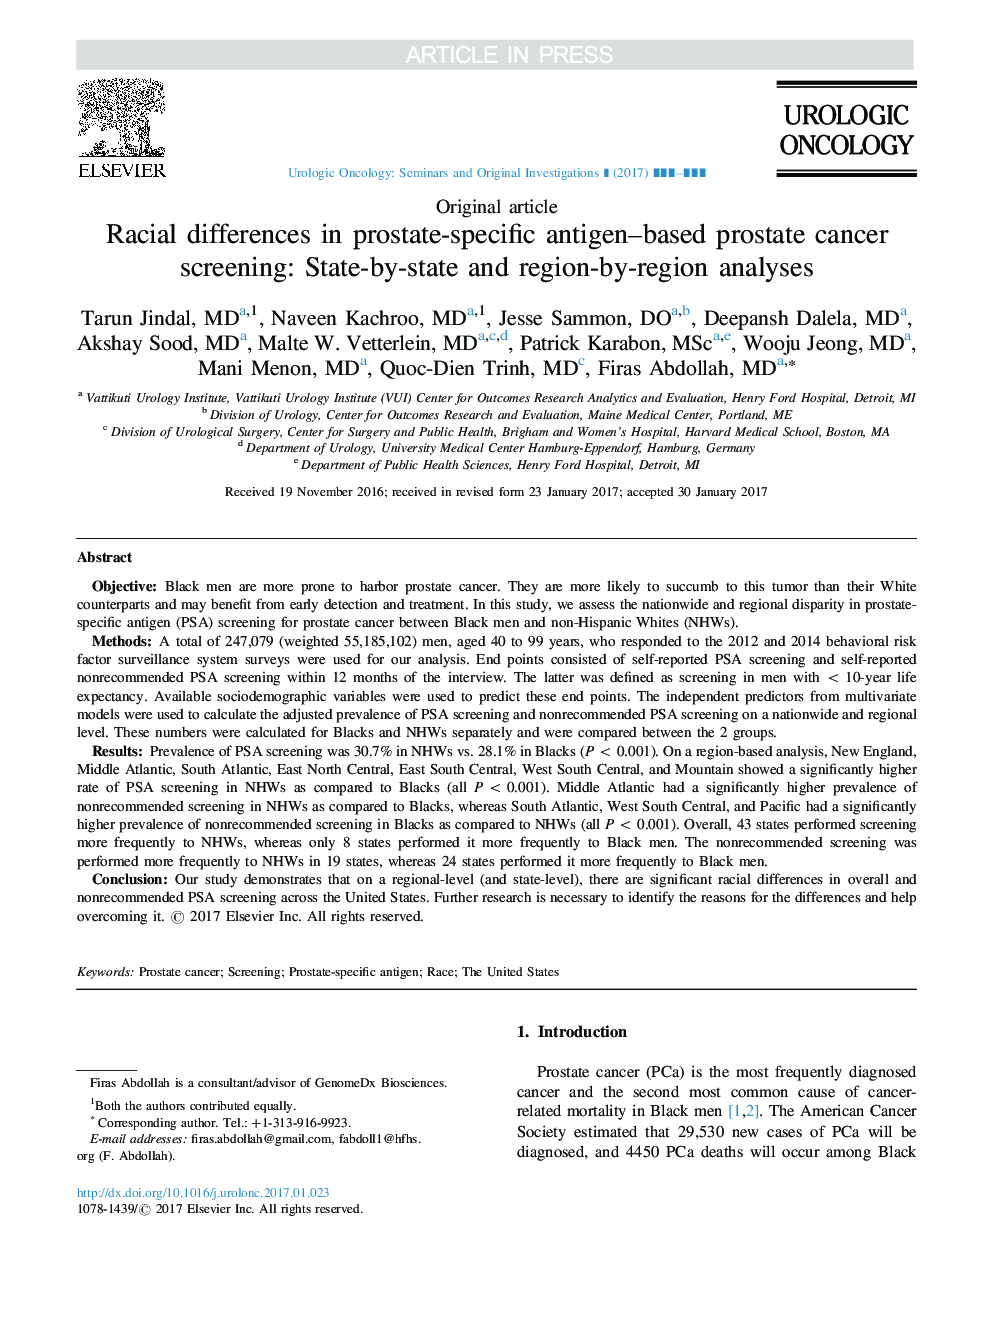 تفاوت های نژادی در غربالگری سرطان پروستات مبتنی بر آنتی ژن پروستات: تجزیه و تحلیل های منطقه ای و منطقه ای 